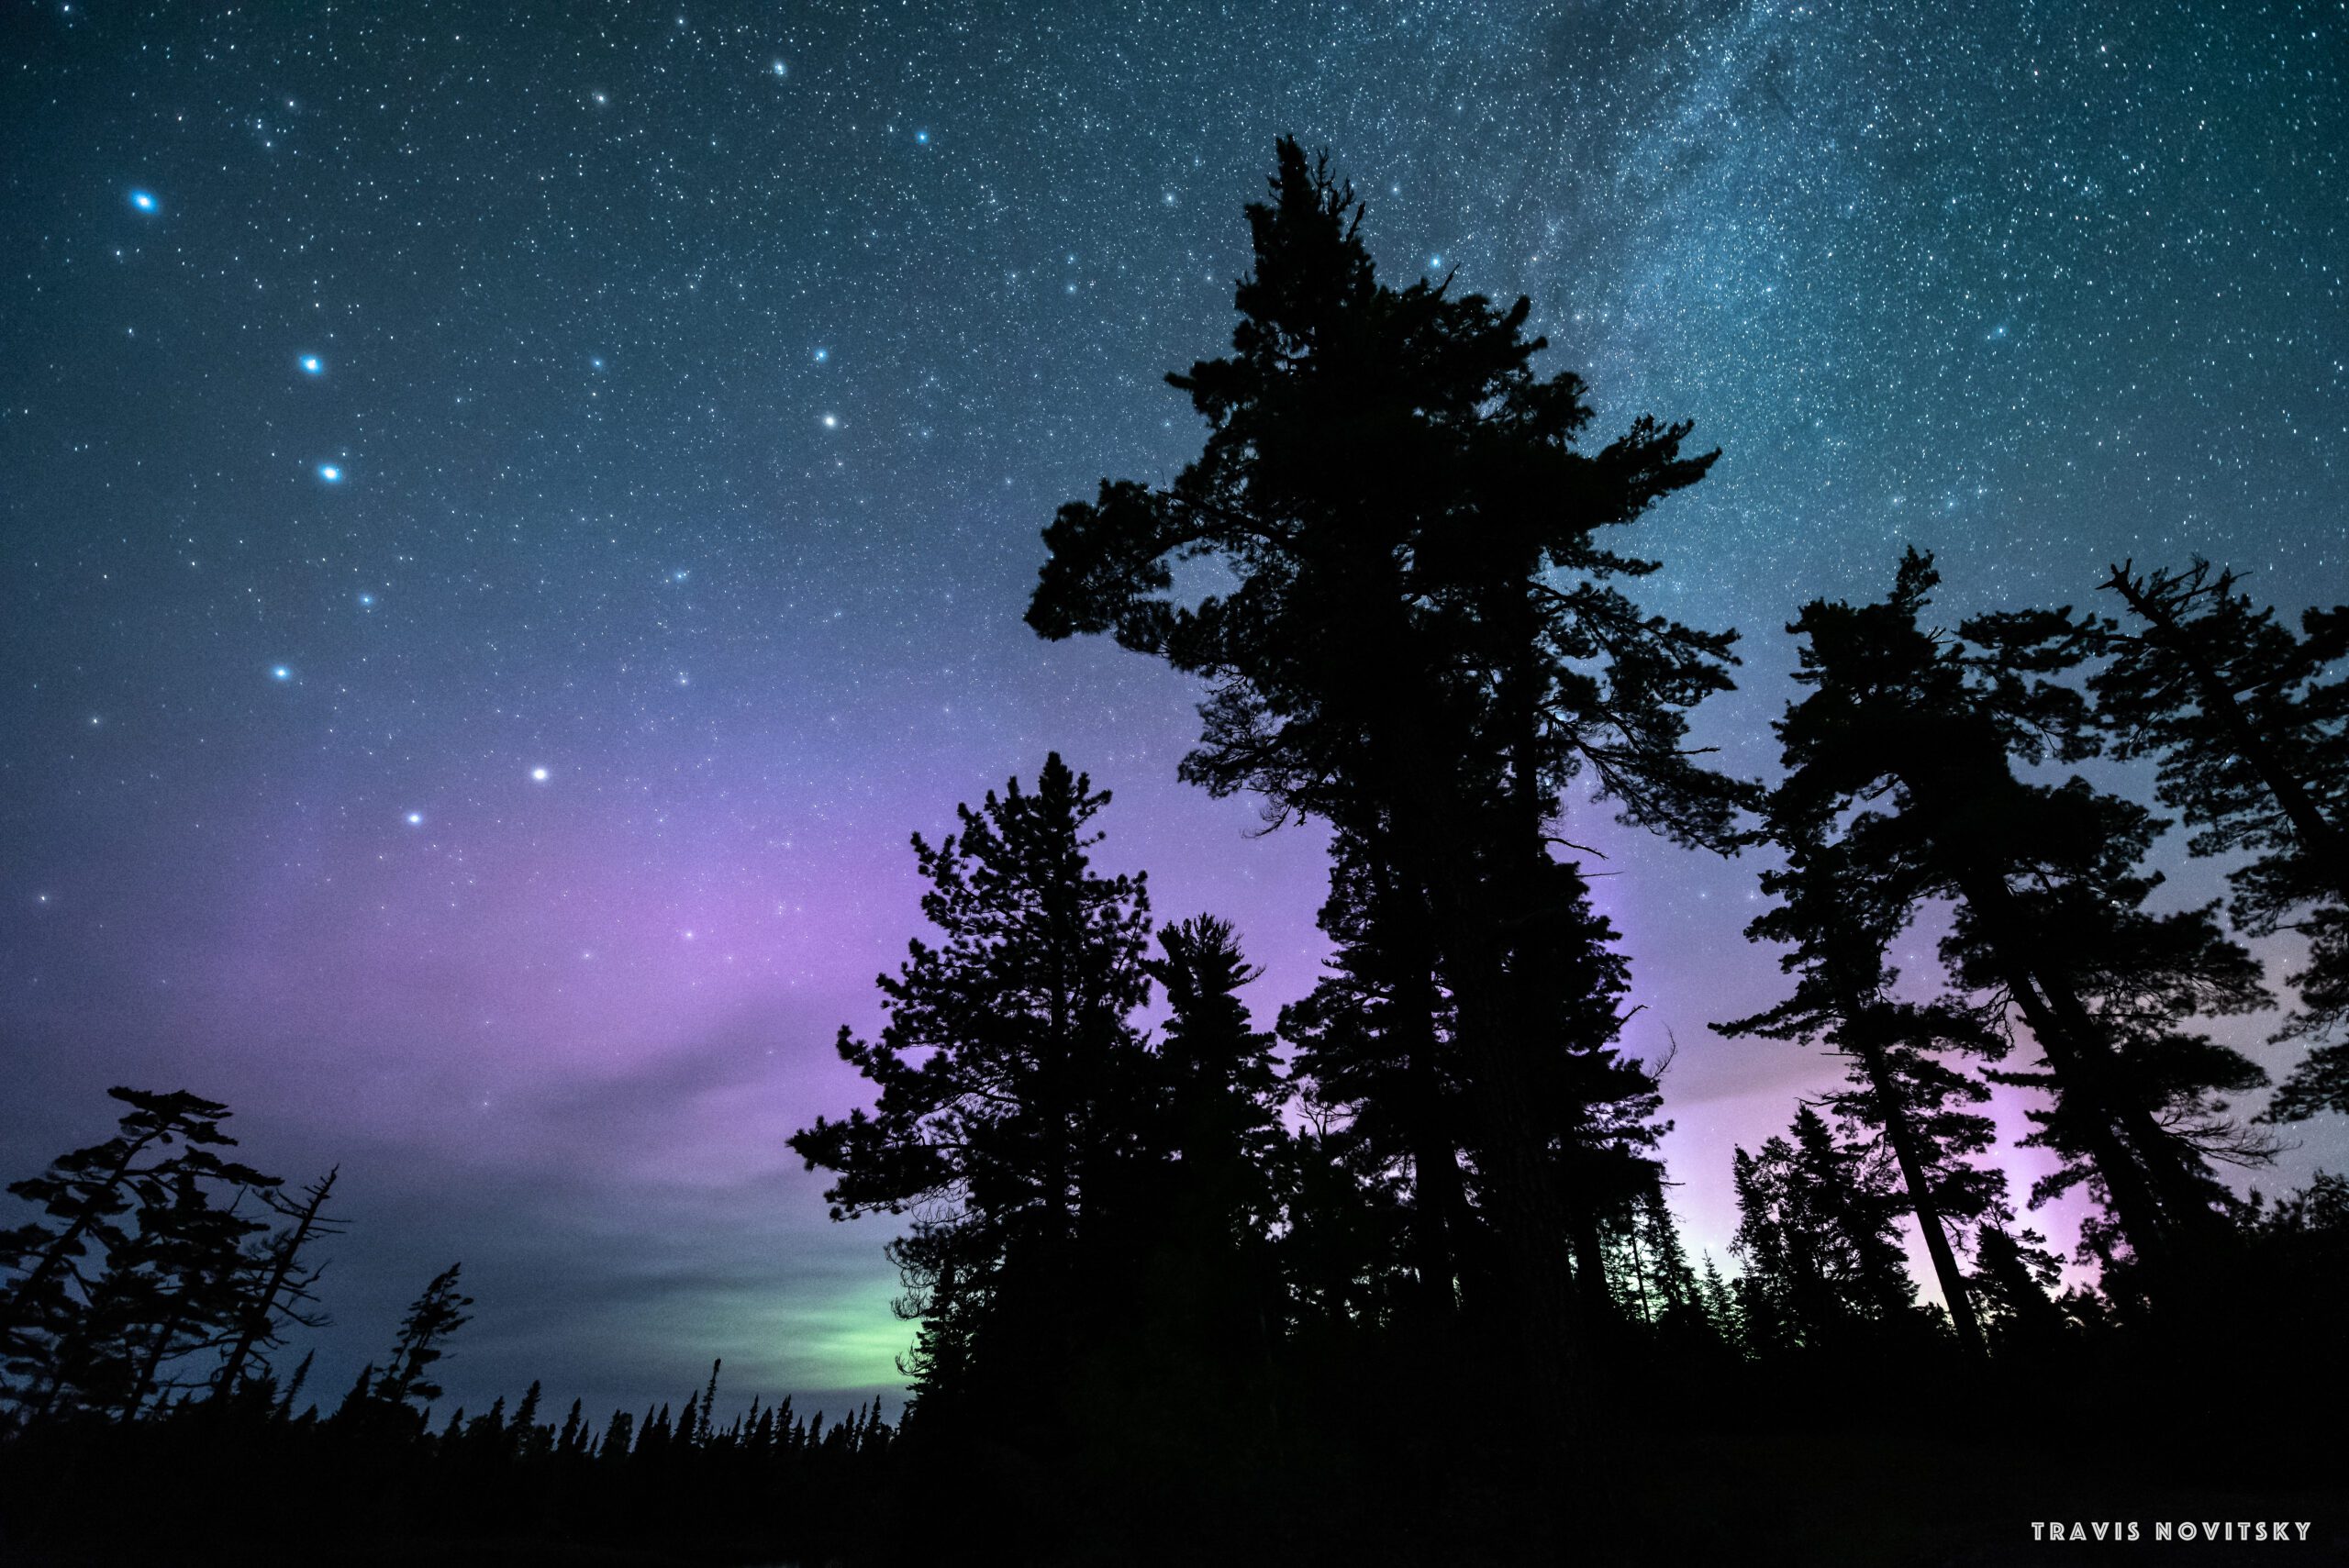 An aurora captured by Travis Novitsky